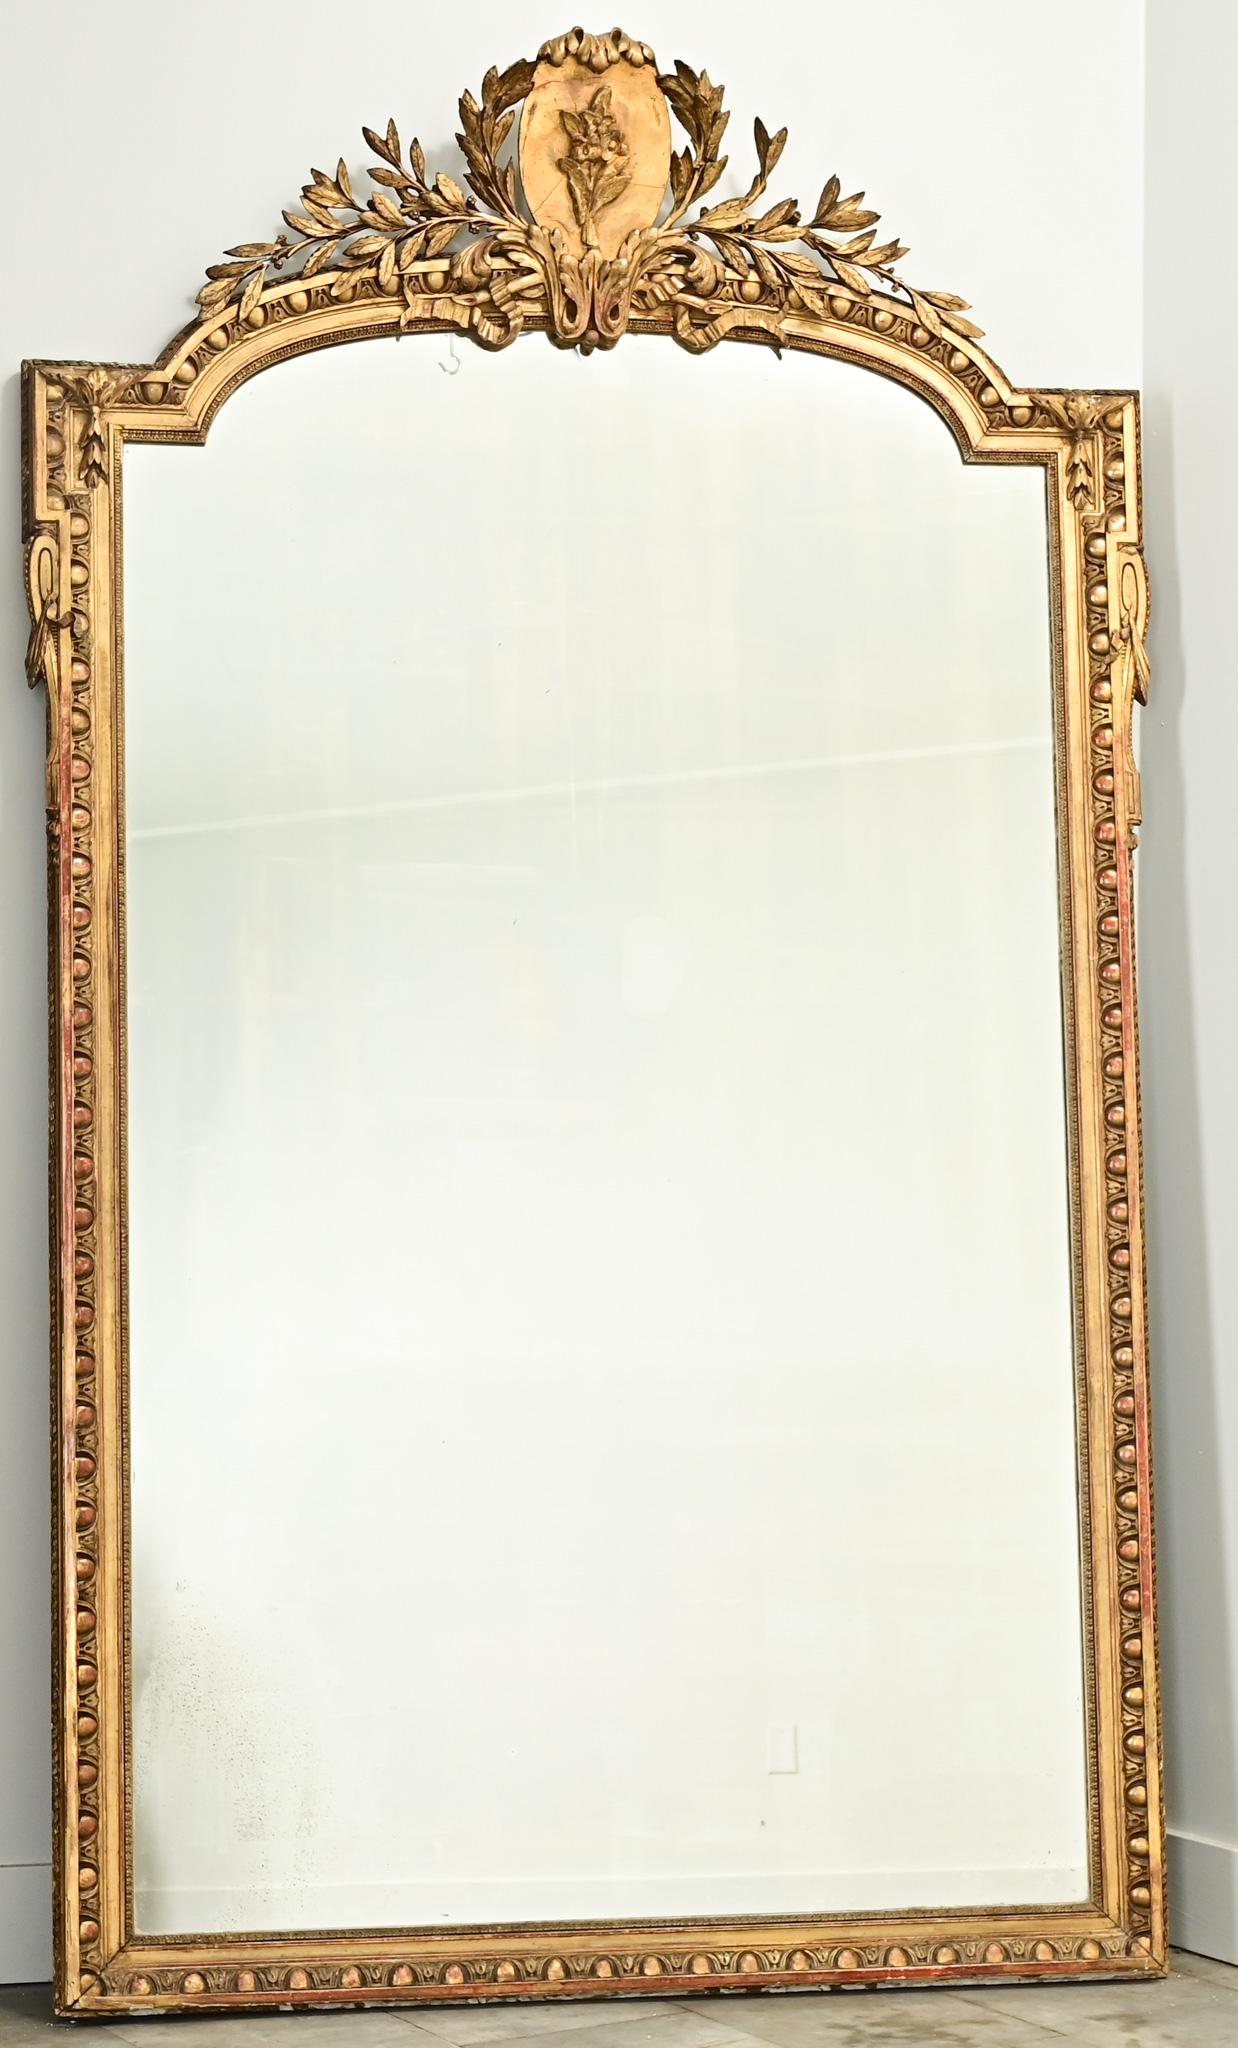 Ein großer französischer vergoldeter Louis-XVI-Spiegel aus dem 18. Jahrhundert. Der Spiegel hat eine geschnitzte Gipskrone mit einer zentralen Blumenkartusche und Lorbeerzweigen. Der Rahmen ist oben in der Mitte abgerundet, hat quadratische Ecken